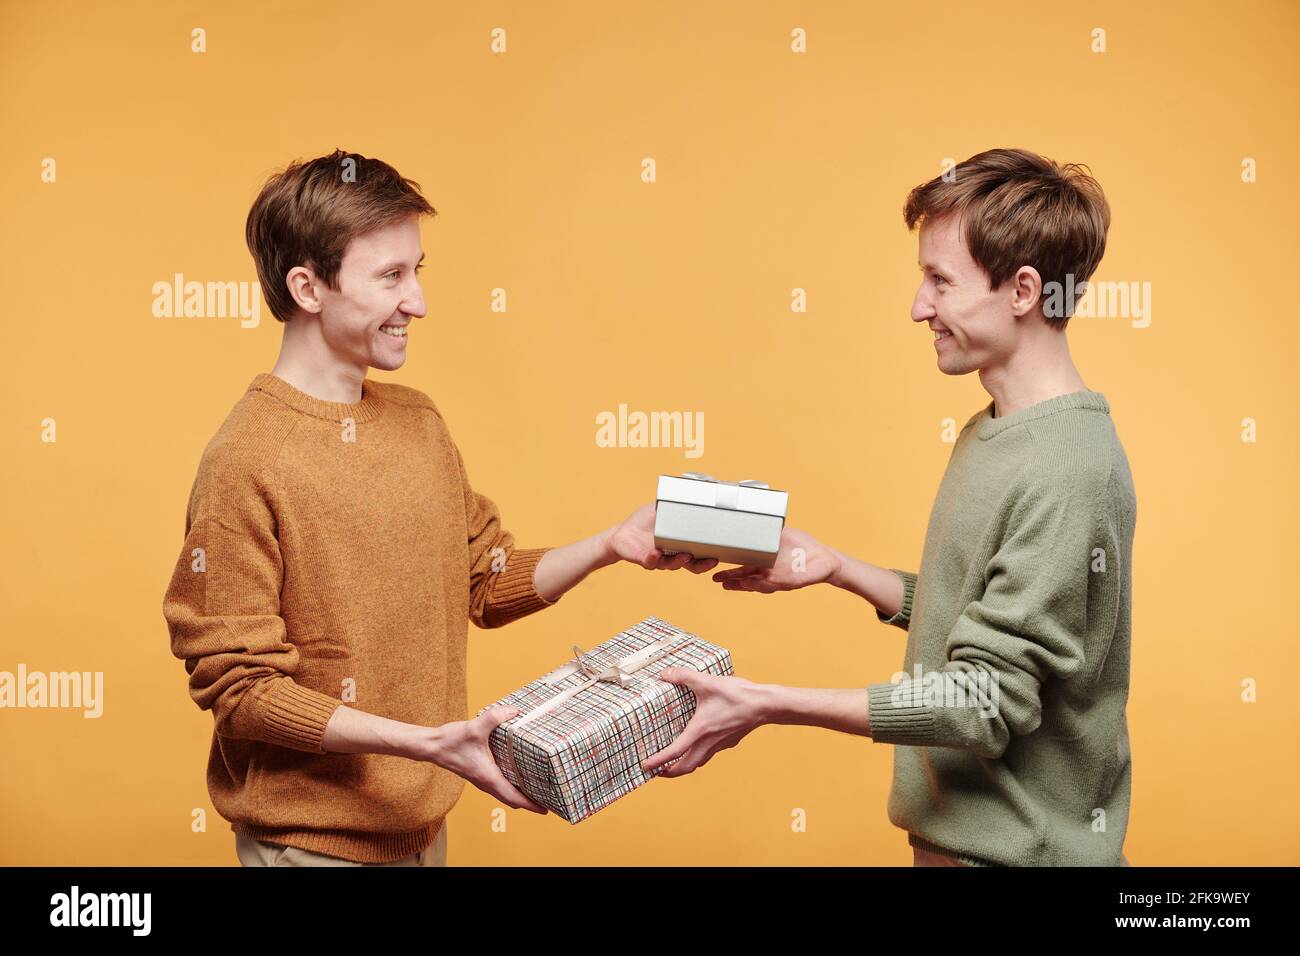 Fröhliche junge Zwillinge in Pullovern stehen vor orangefarbenem Hintergrund und tauschen Sie Geschenke aus, und gratulieren Sie sich gegenseitig zum Geburtstag Stockfoto